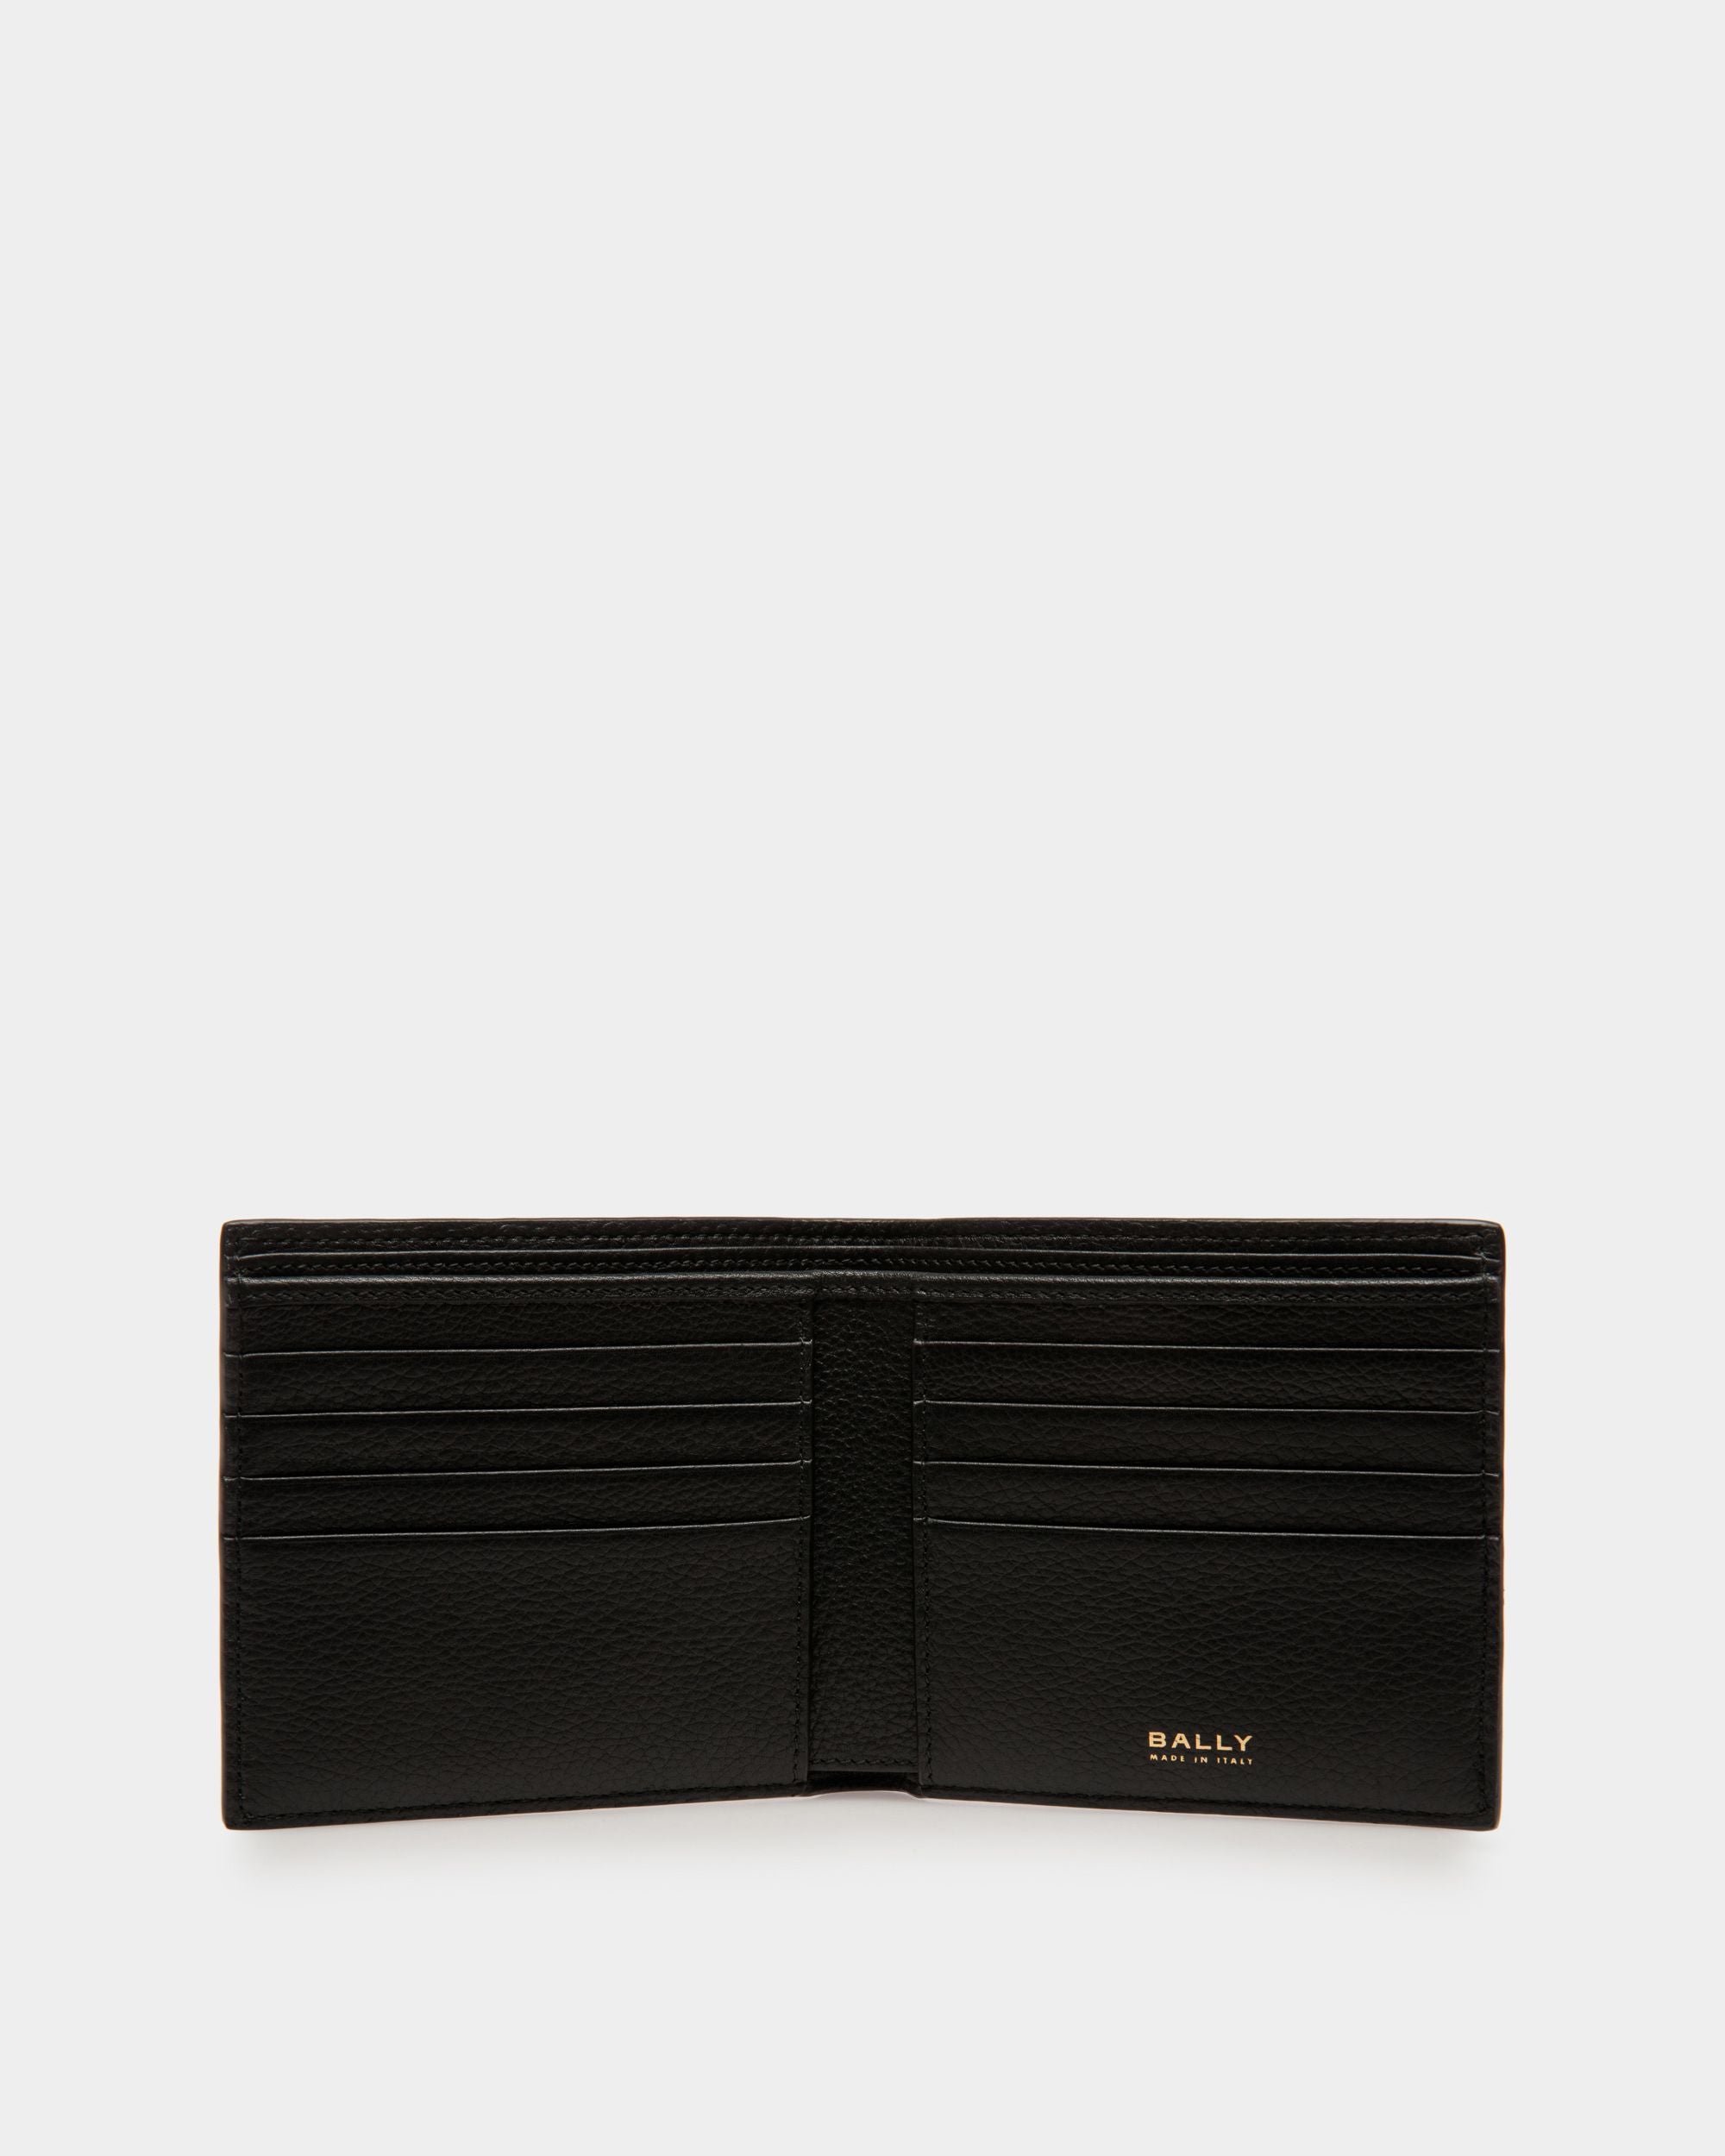 Bifold 8 CC Wallet | Men's Wallet | Black Leather | Bally | Still Life Open / Inside